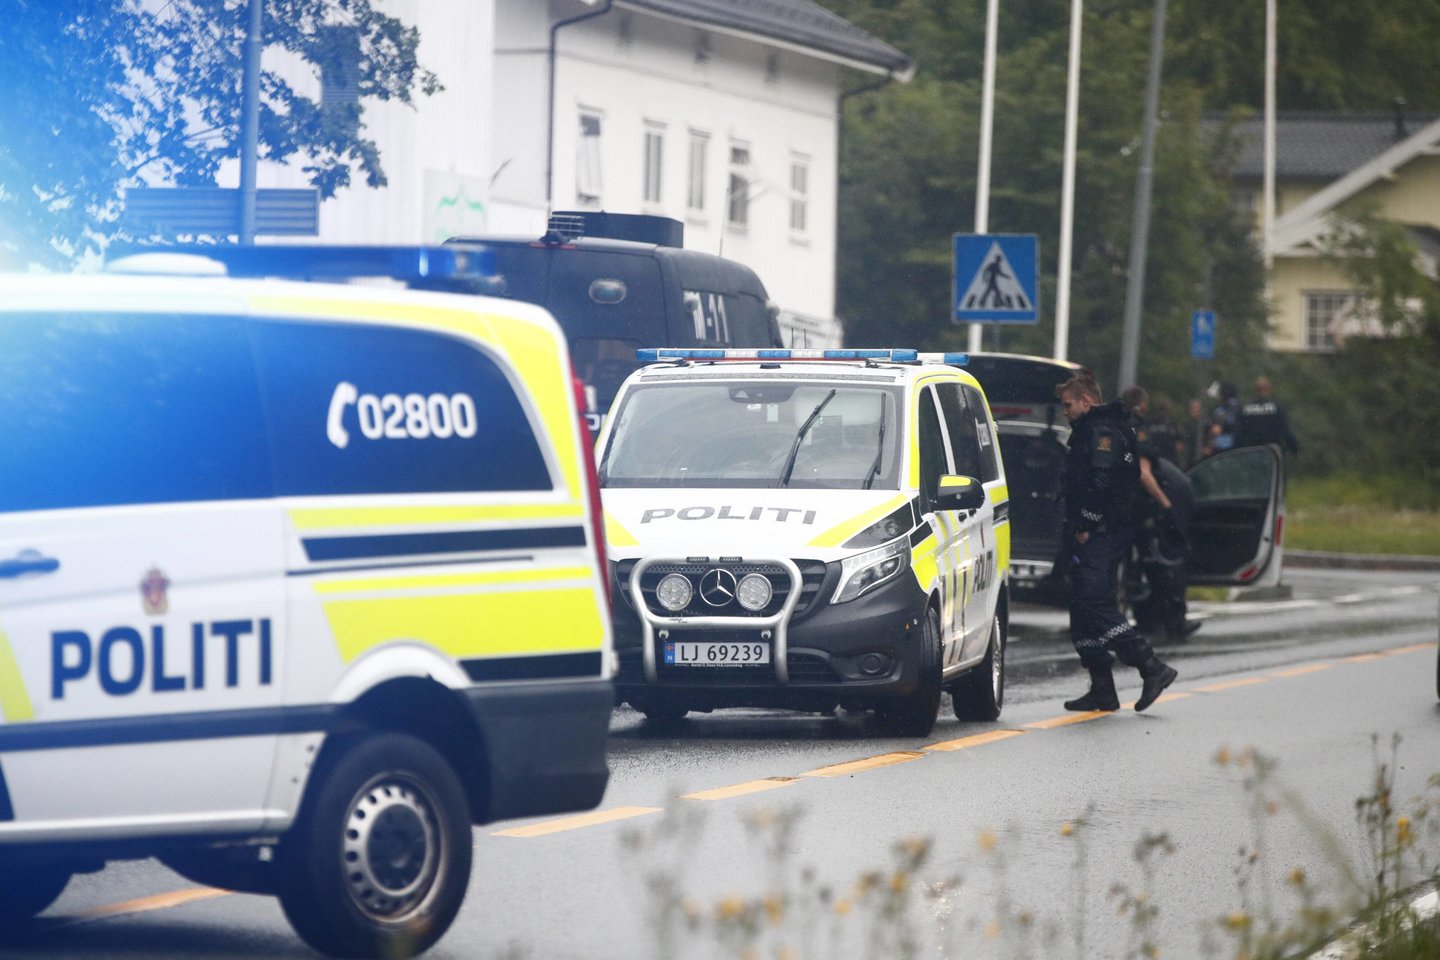  Šaudynės vienoje mečetėje šalia Oslo tiriamos kaip „pasikėsinimas įvykdyti teroro aktą“, sekmadienį pranešė Norvegijos policija.<br> AFP/Scanpix nuotr.